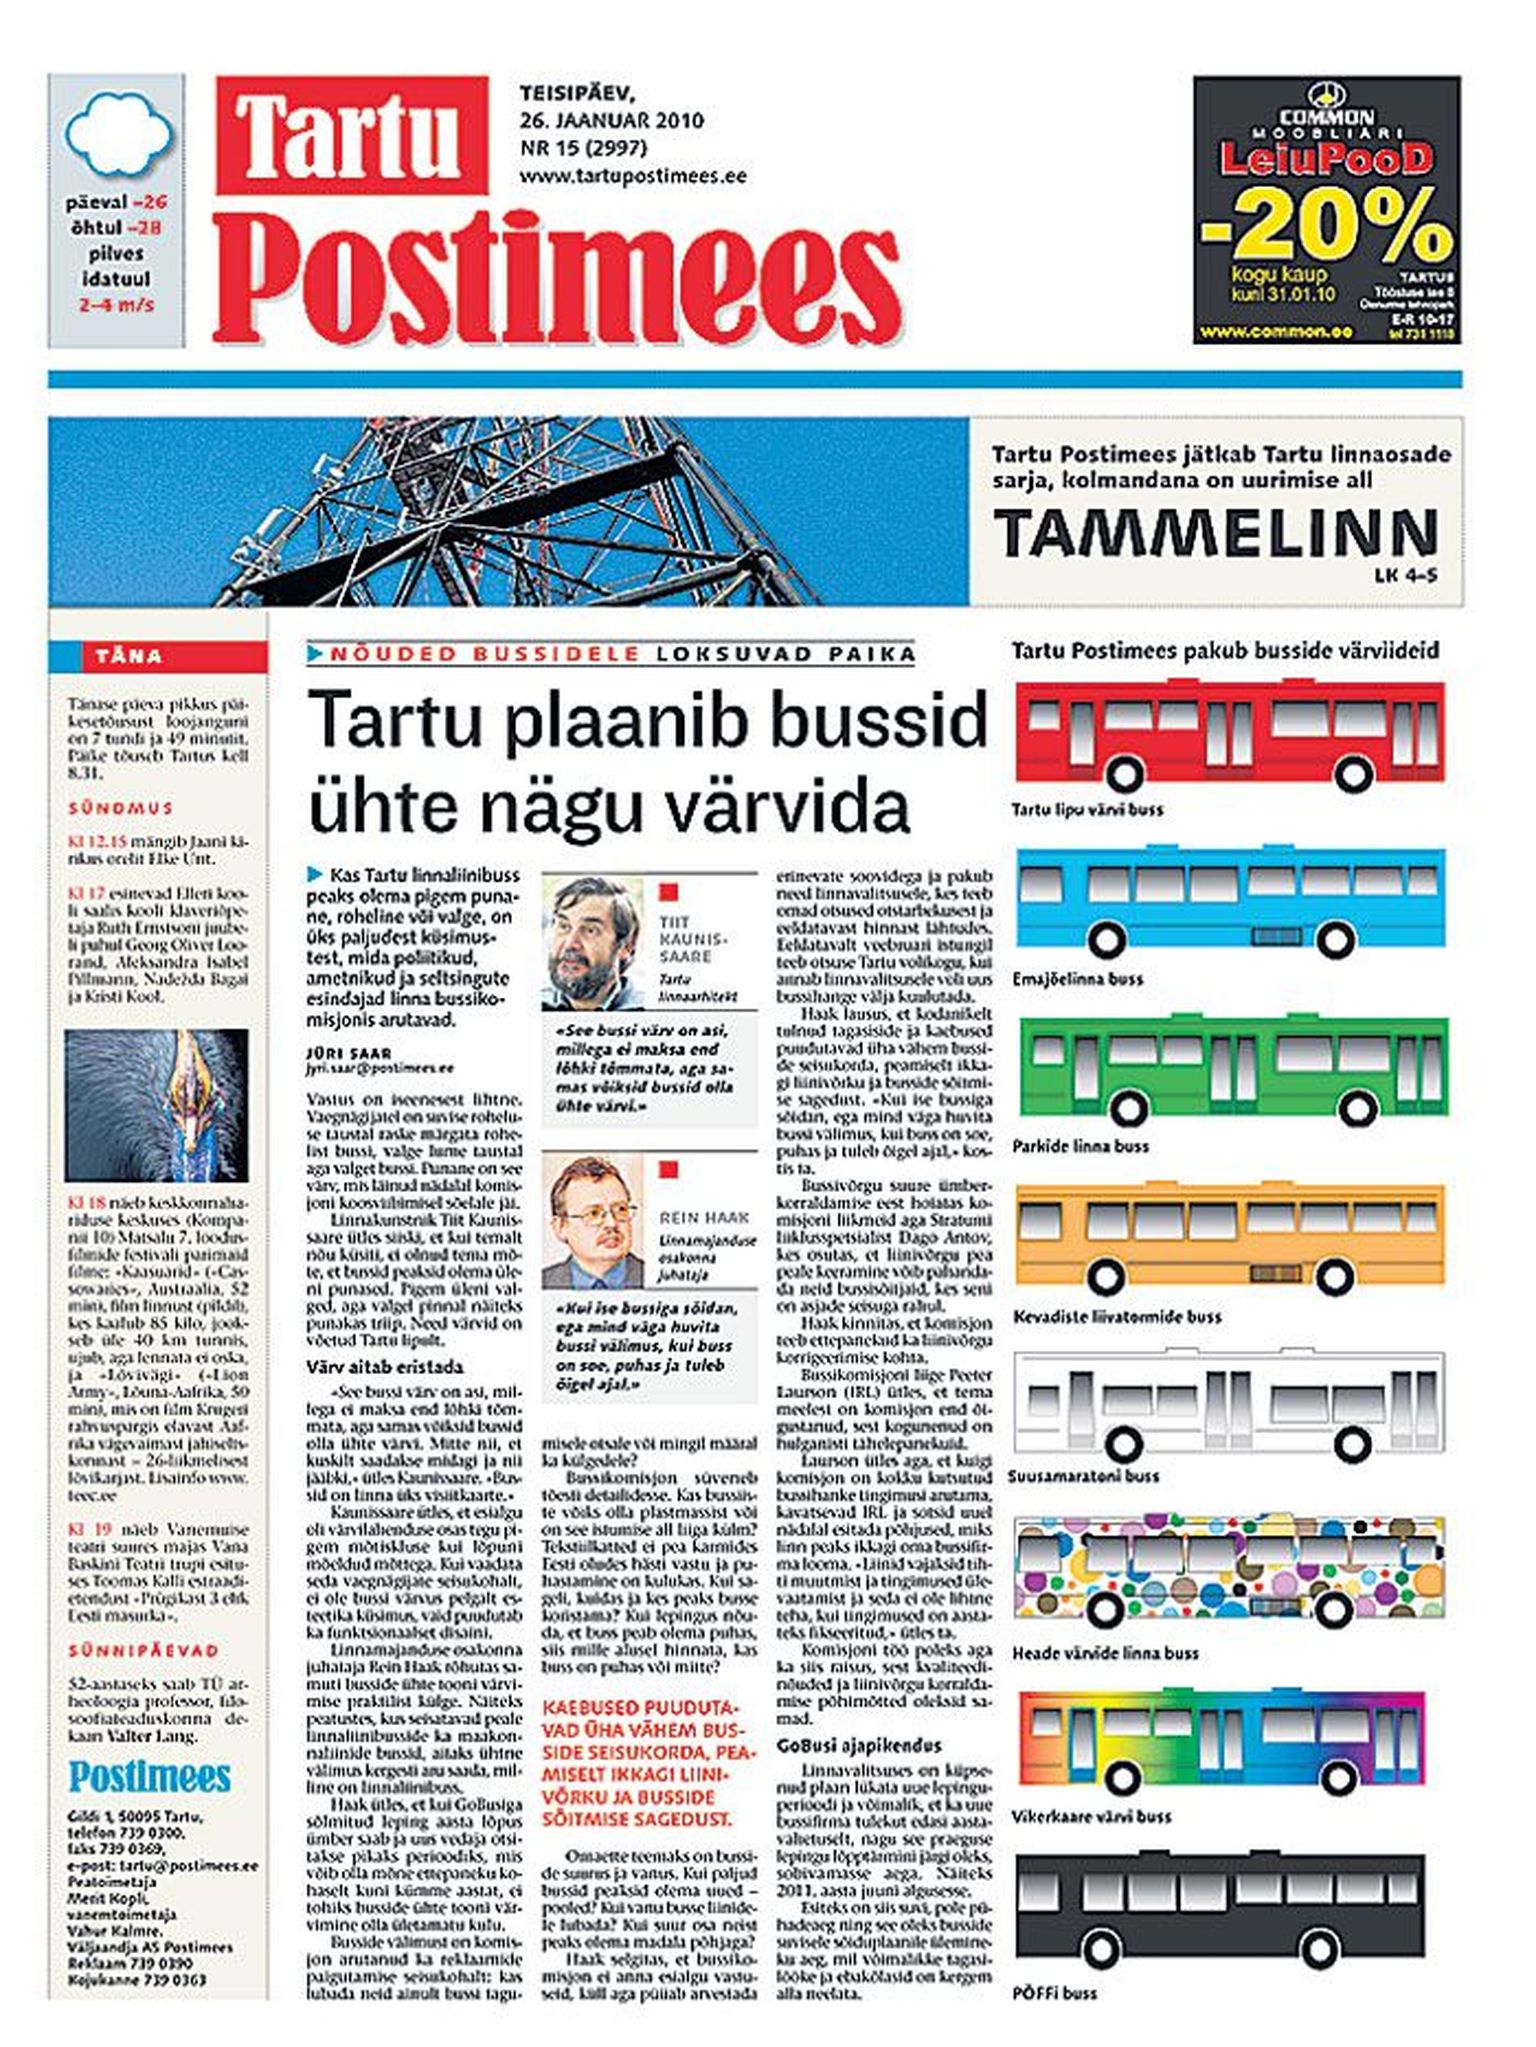 Tartu Postimees kirjutas bussikomisjoni tööst ka 26. jaanuari lehes.